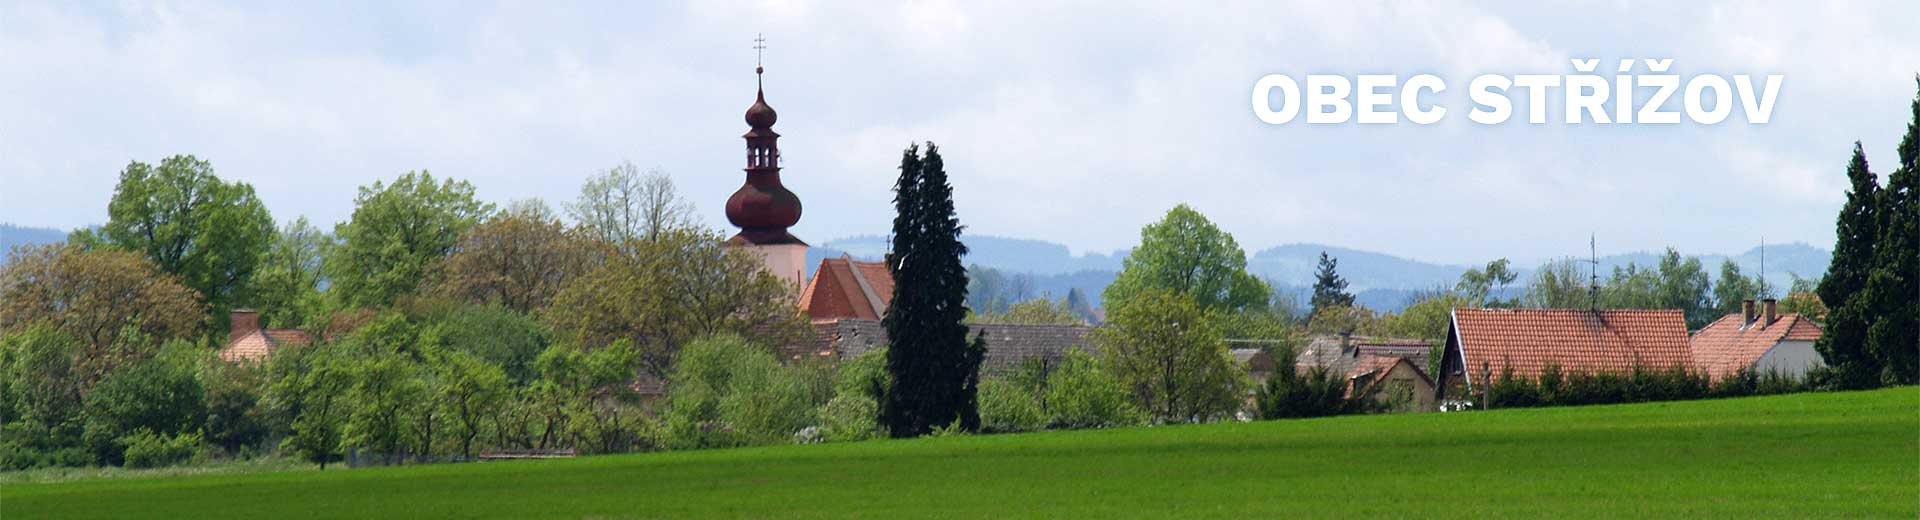 Střížov je malá obec na jih od Českých Budějovic